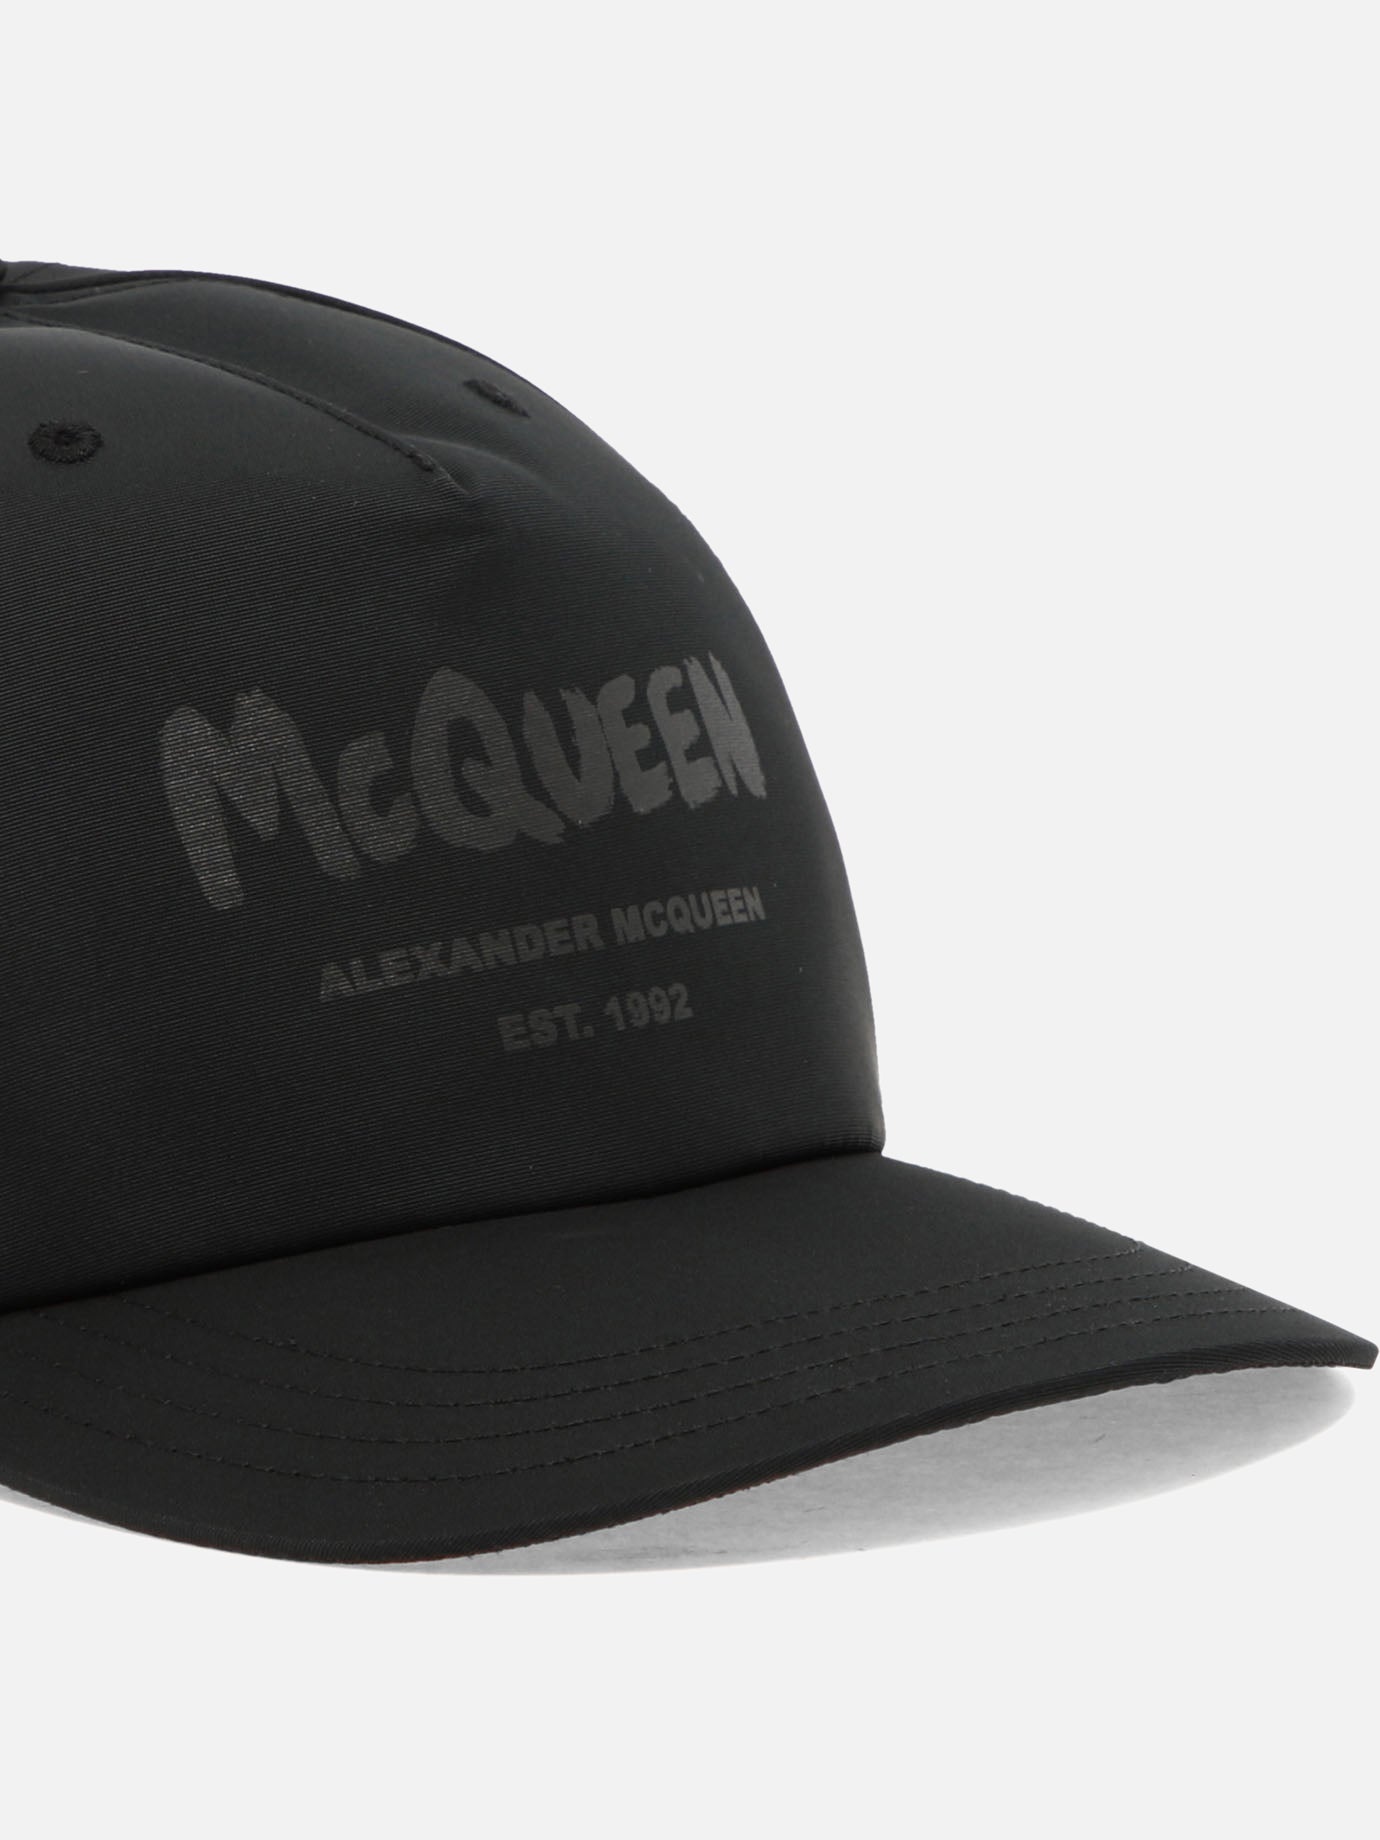 "McQueen Graffiti" cap